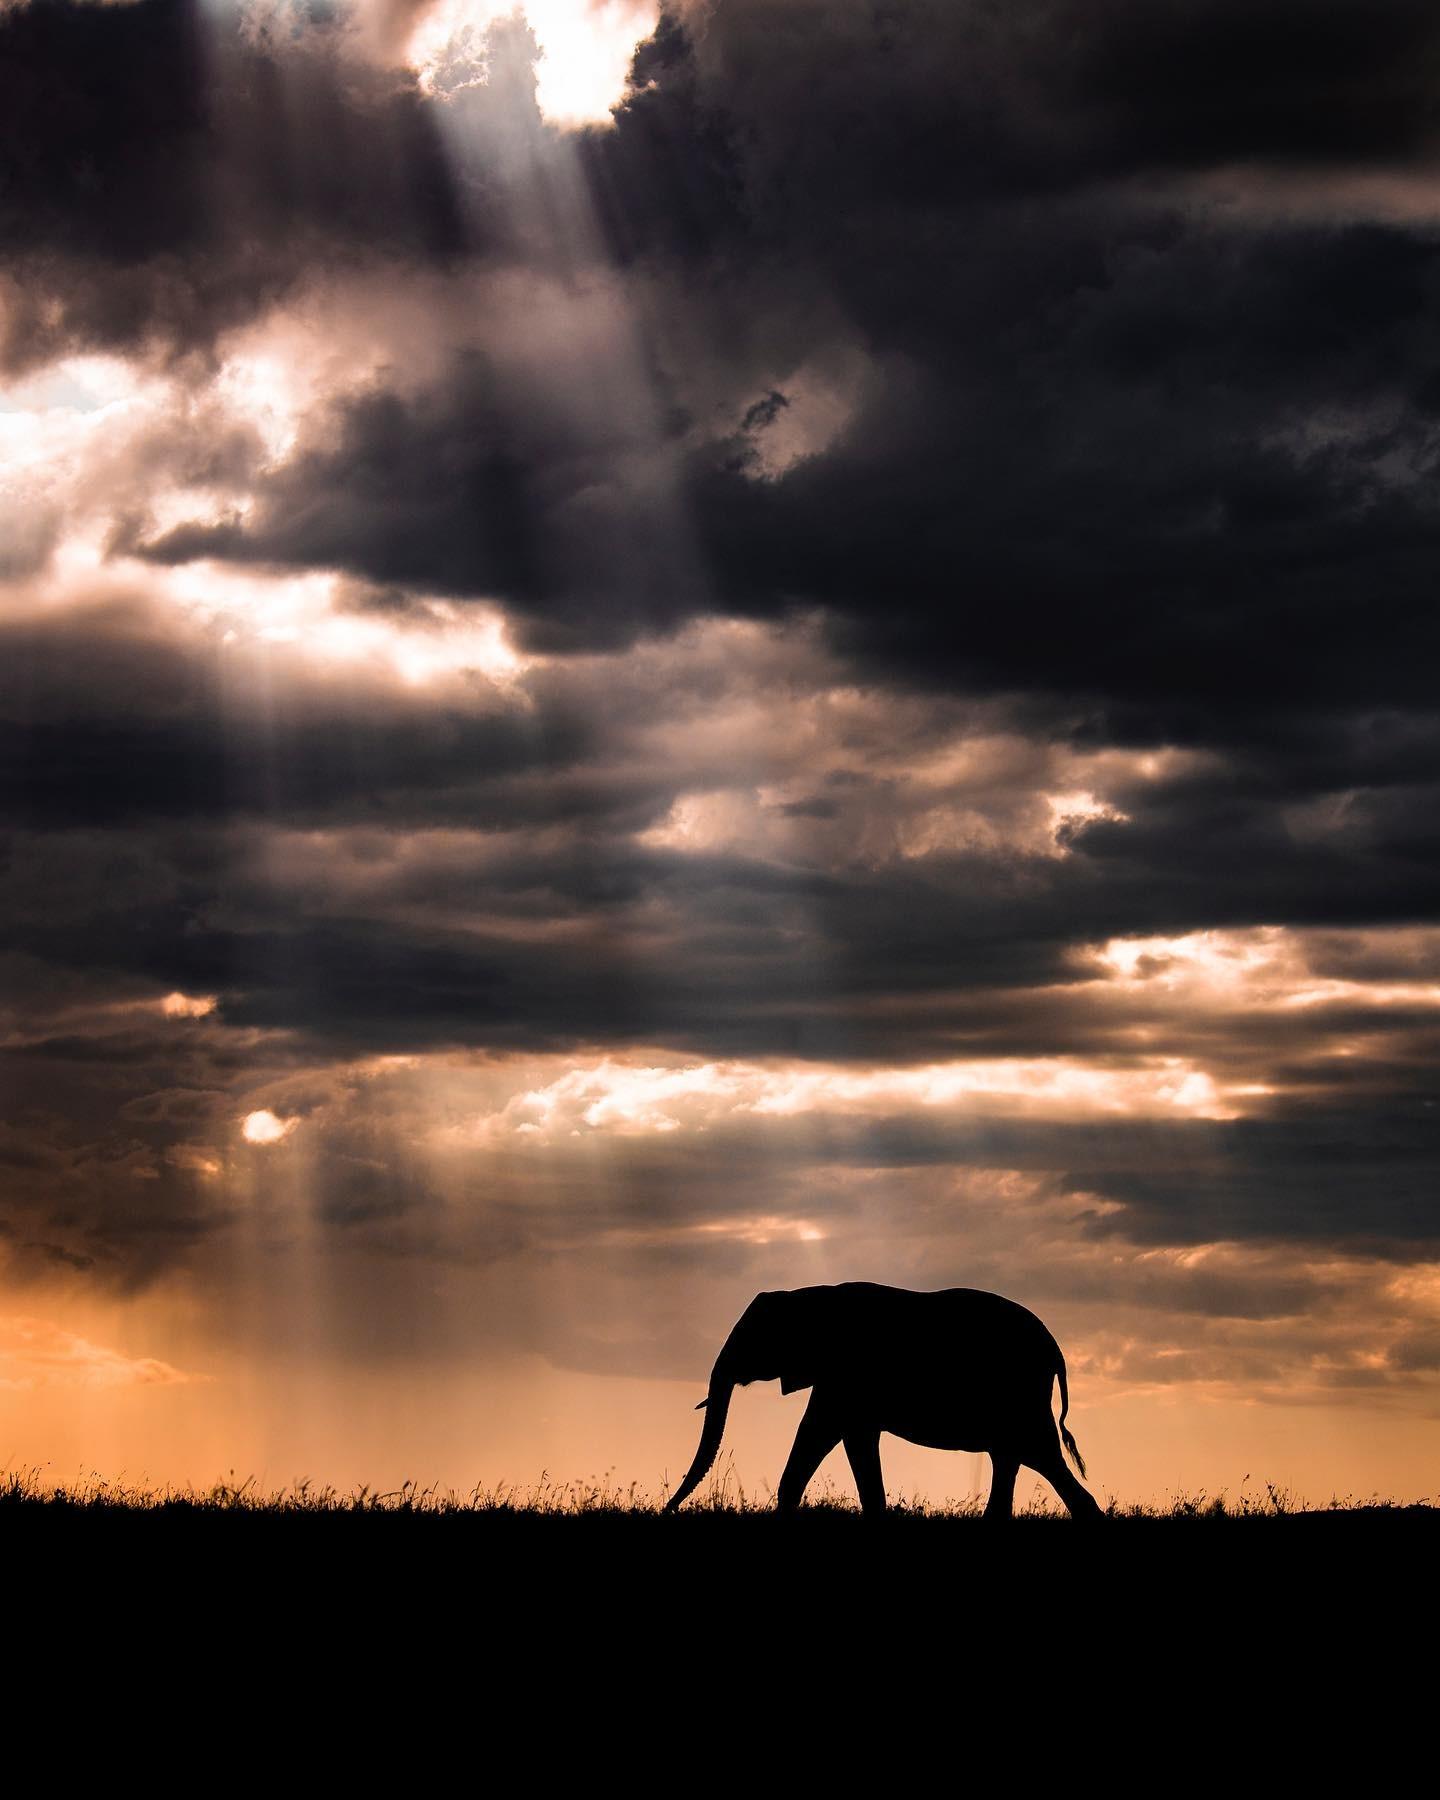  大象，来自摄影师Harman Singh Heer。 